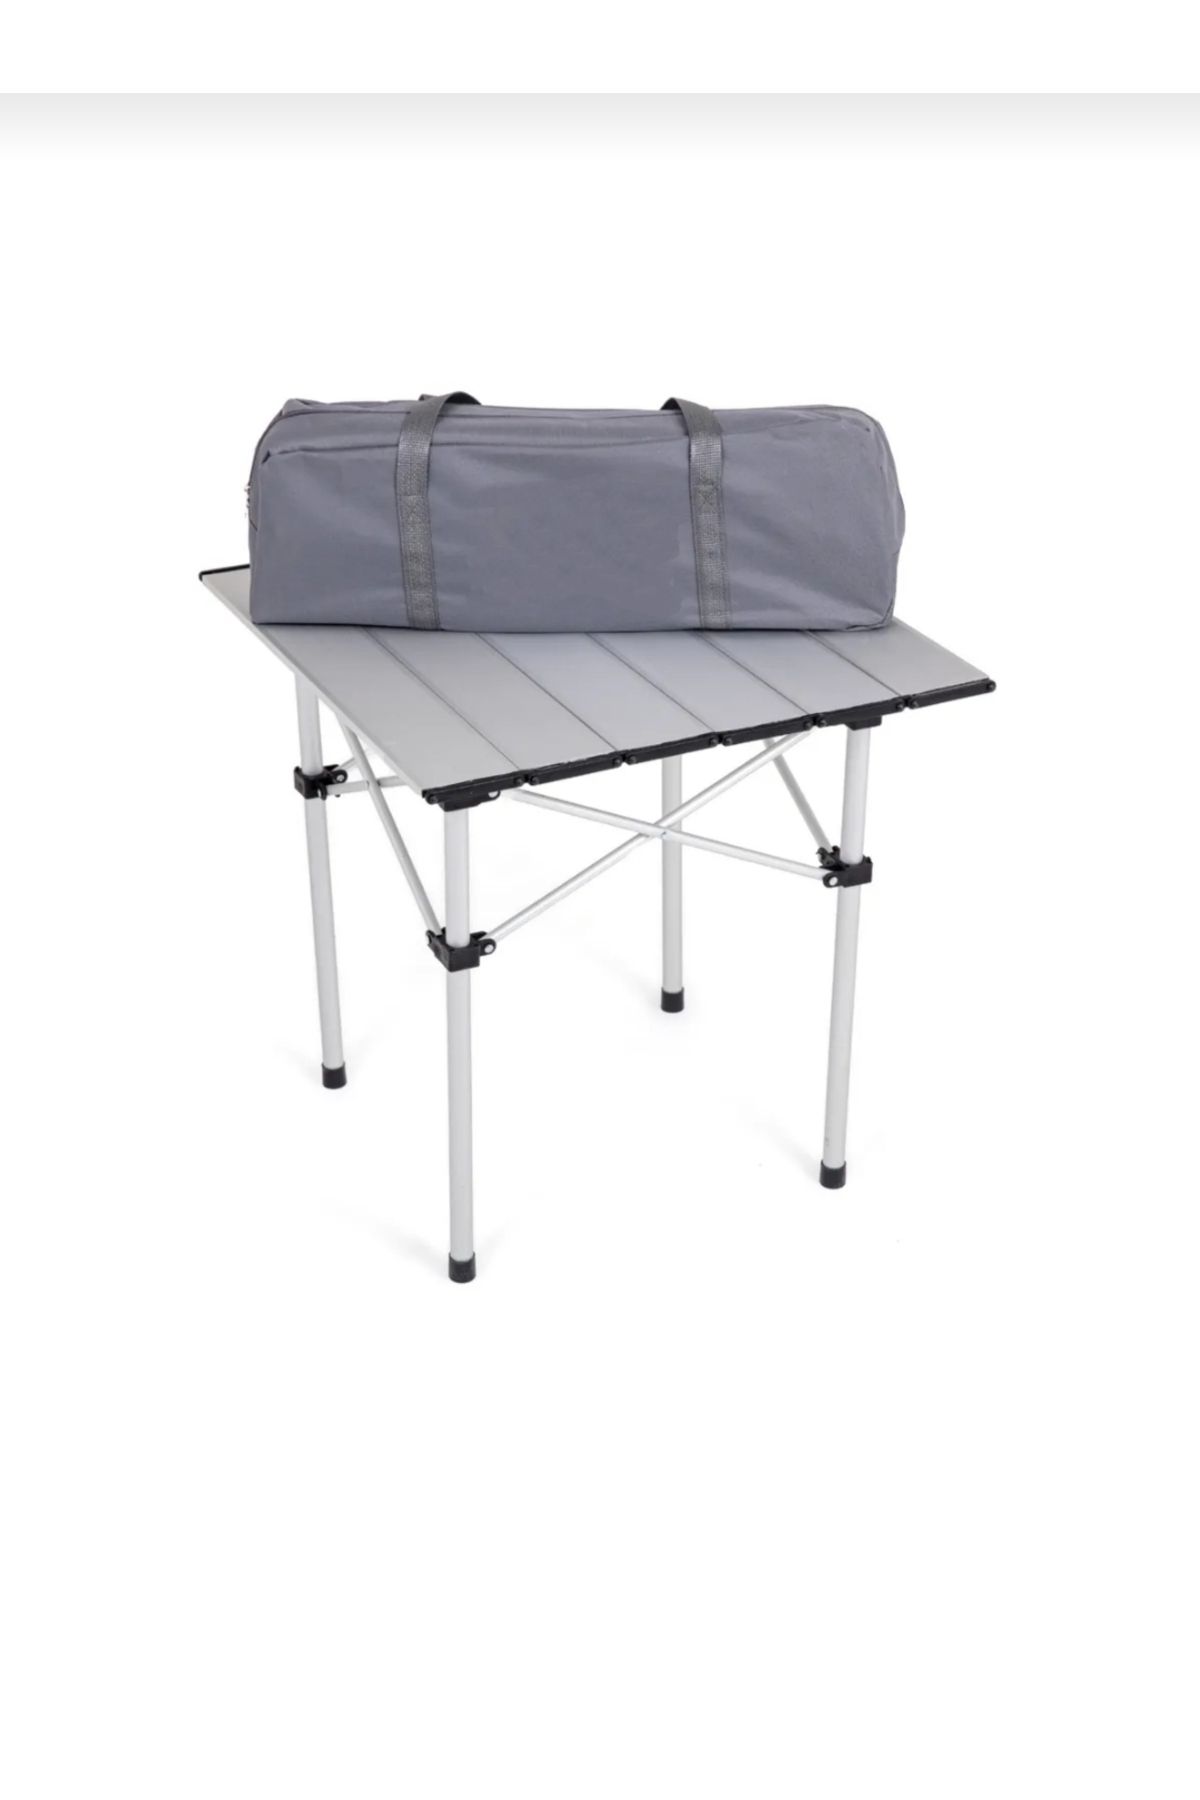 AsKamp Alüminyum Katlanabilir Portatif Kamp Piknik-Bahçe-Balkon Masası(Çantalı)Metalik(Küçük Boy)